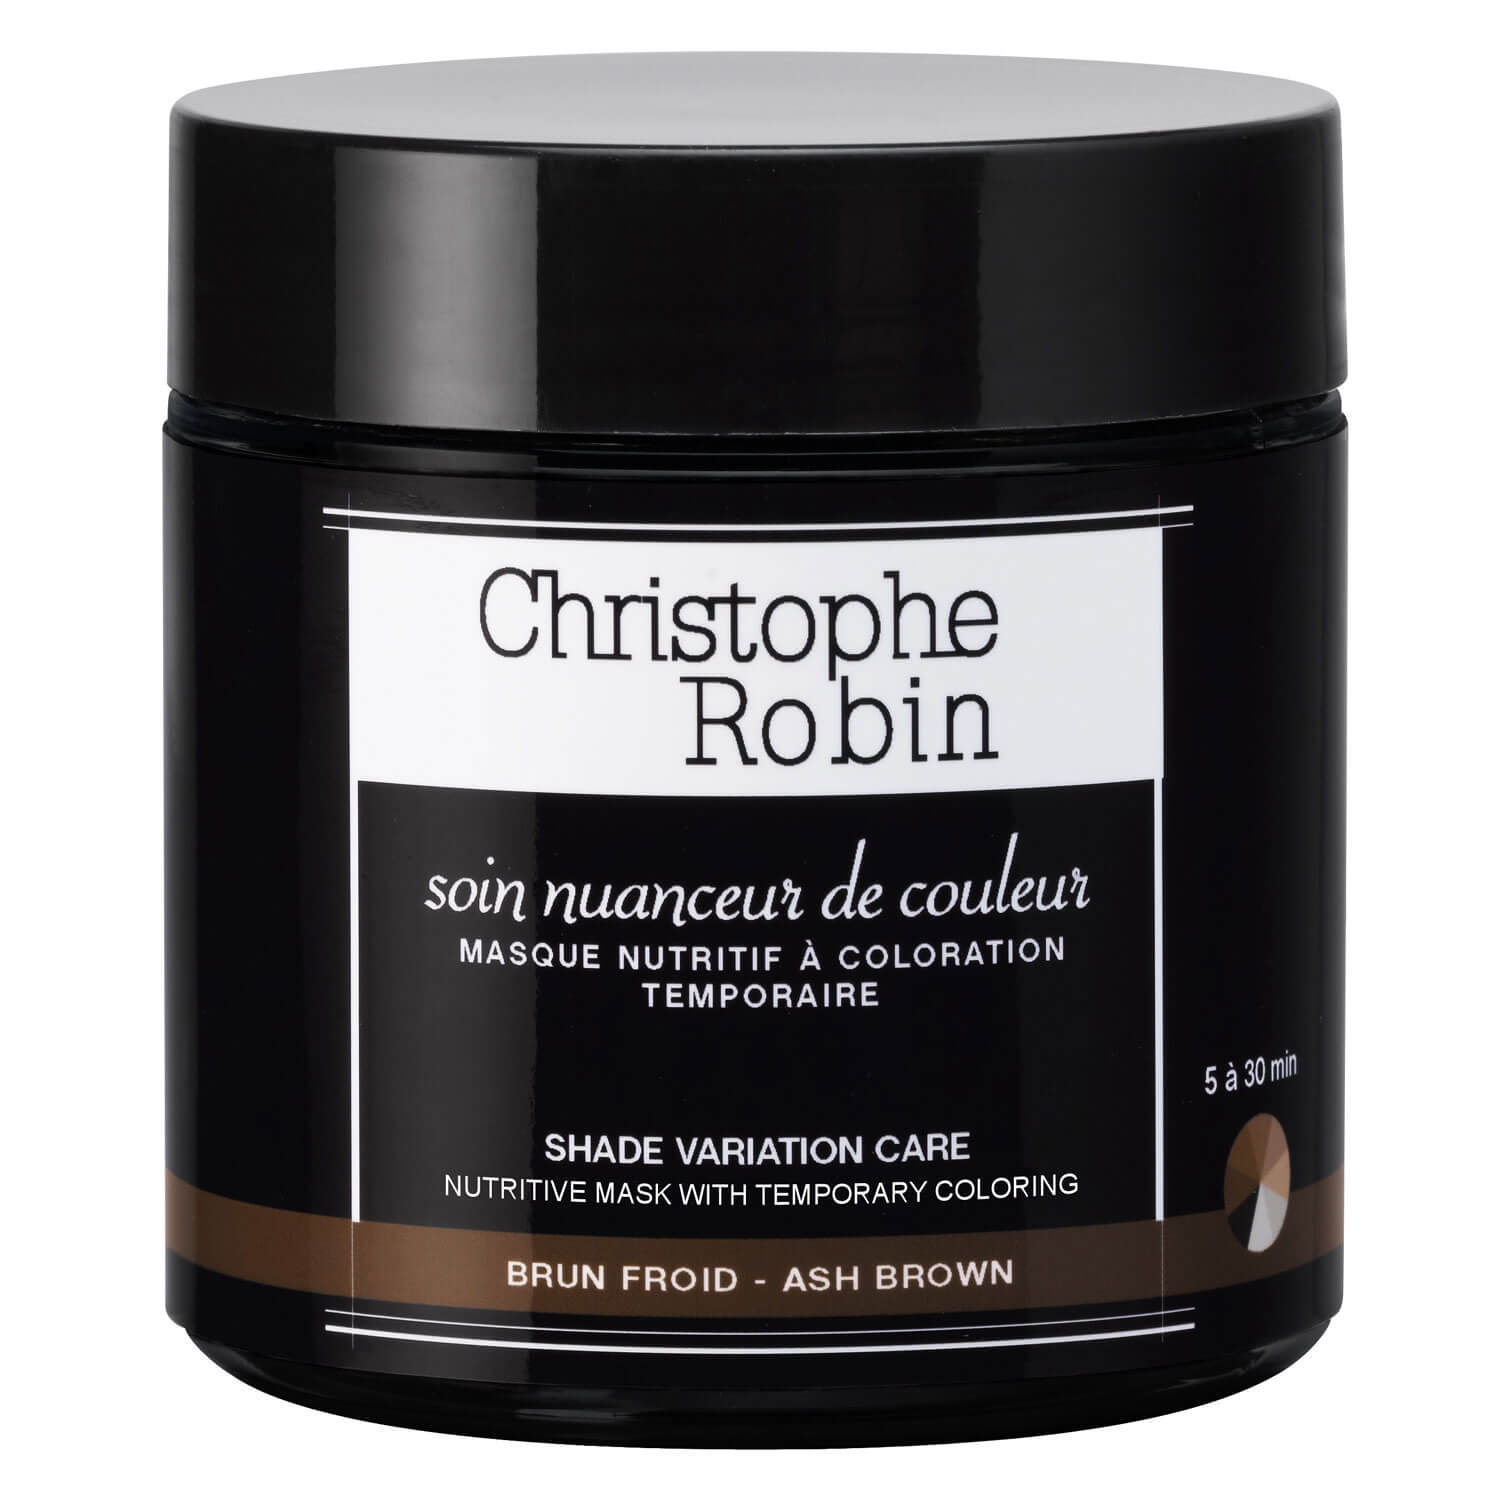 Produktbild von Christophe Robin - Soin nuanceur de couleur brun froid